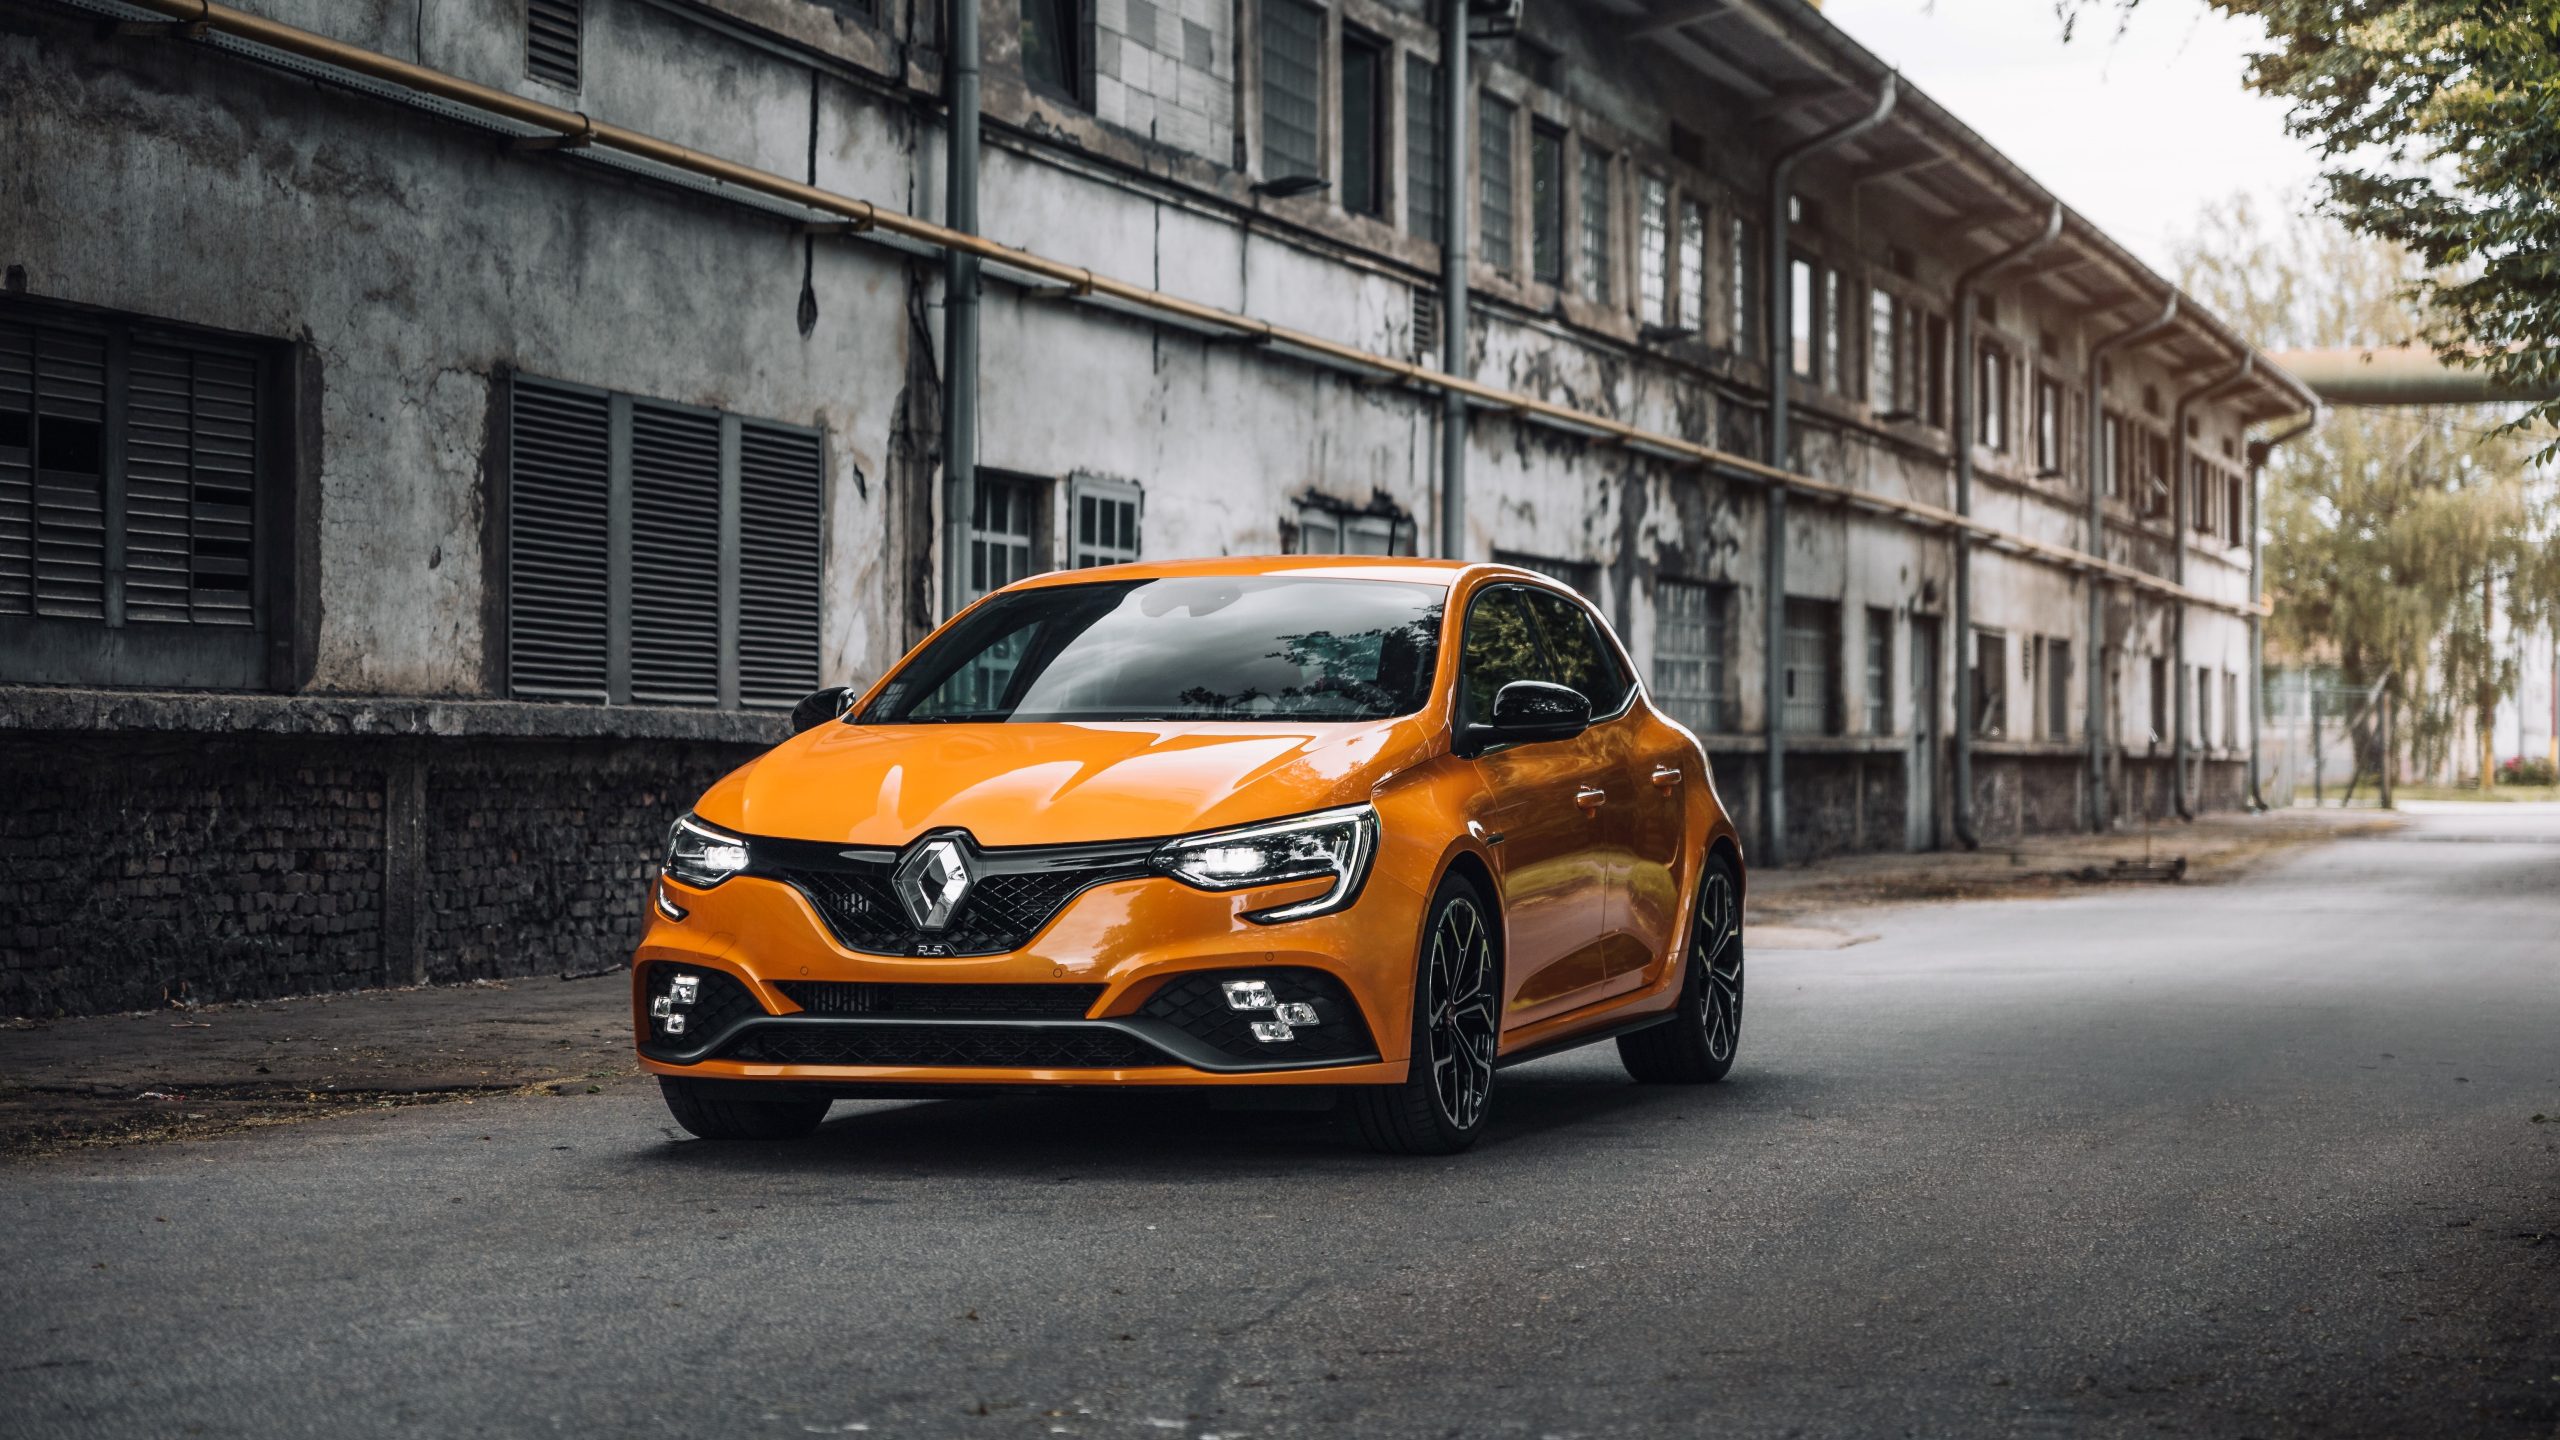 Planovi Renaulta: U Europi će 2030. prodavati samo električne automobile